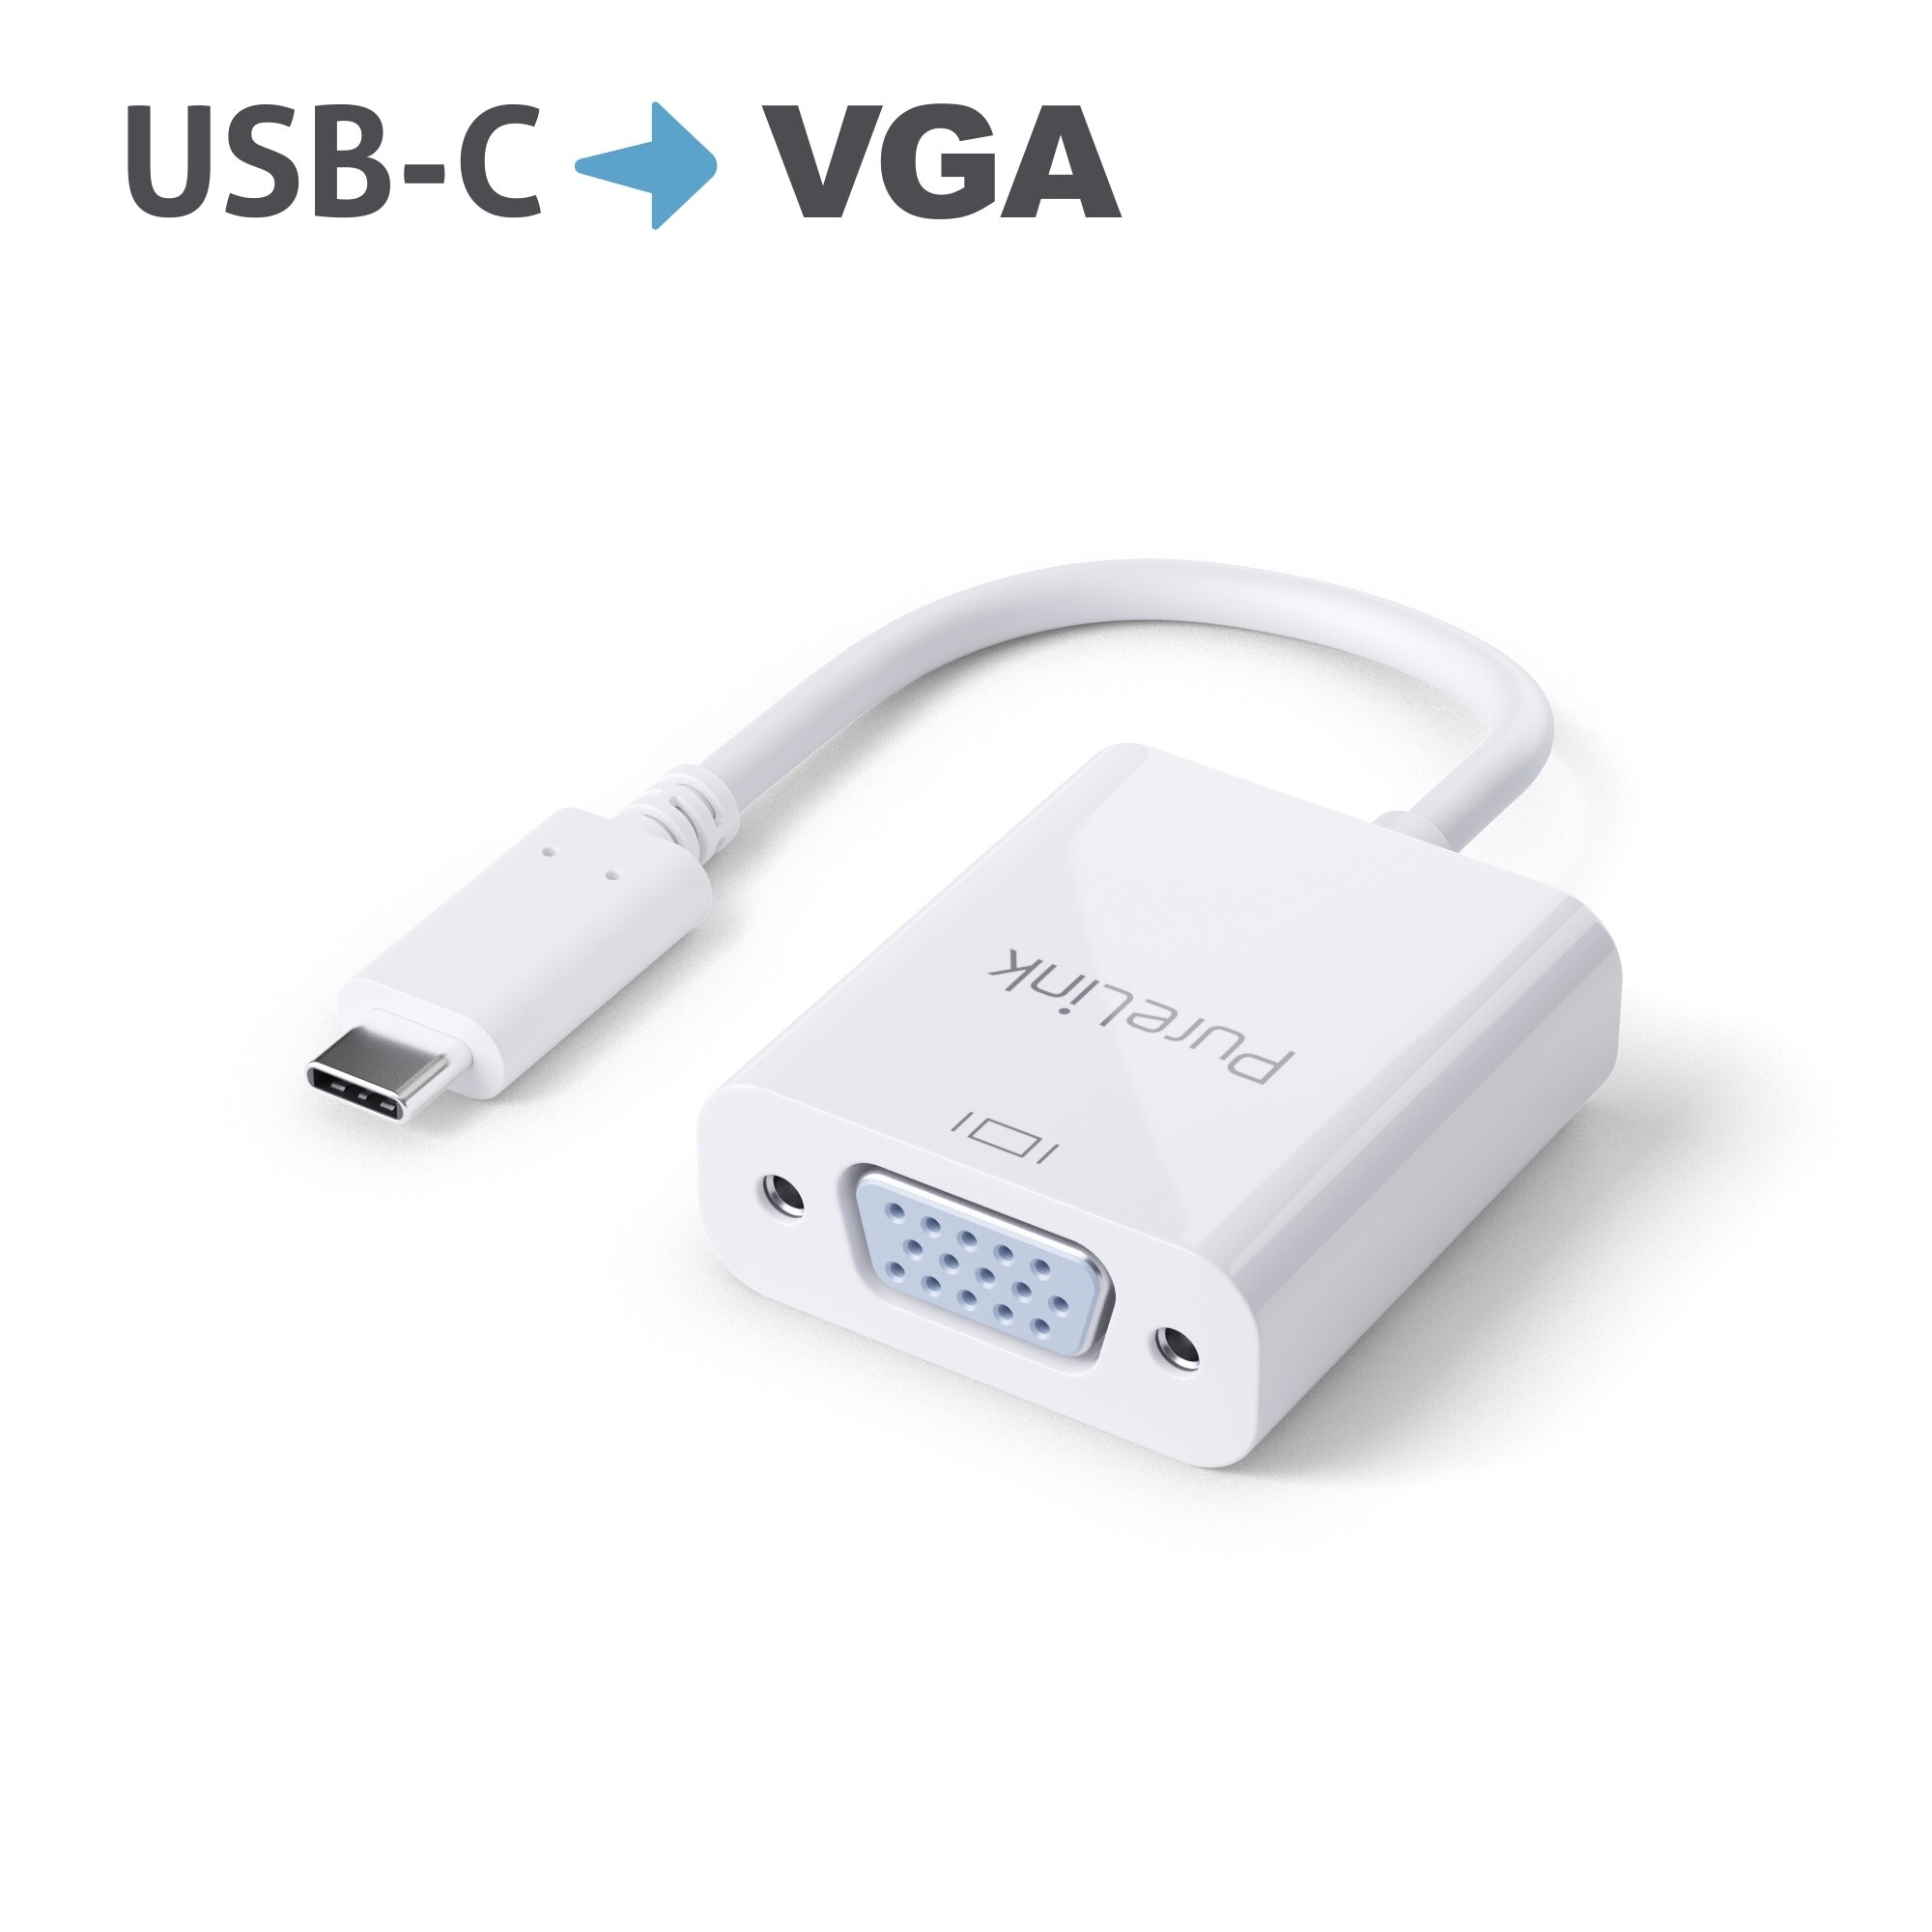 PURELINK USB-C auf VGA Adapter 1200p 0.10m weiß - Adapter - Digital/Daten (IS220)